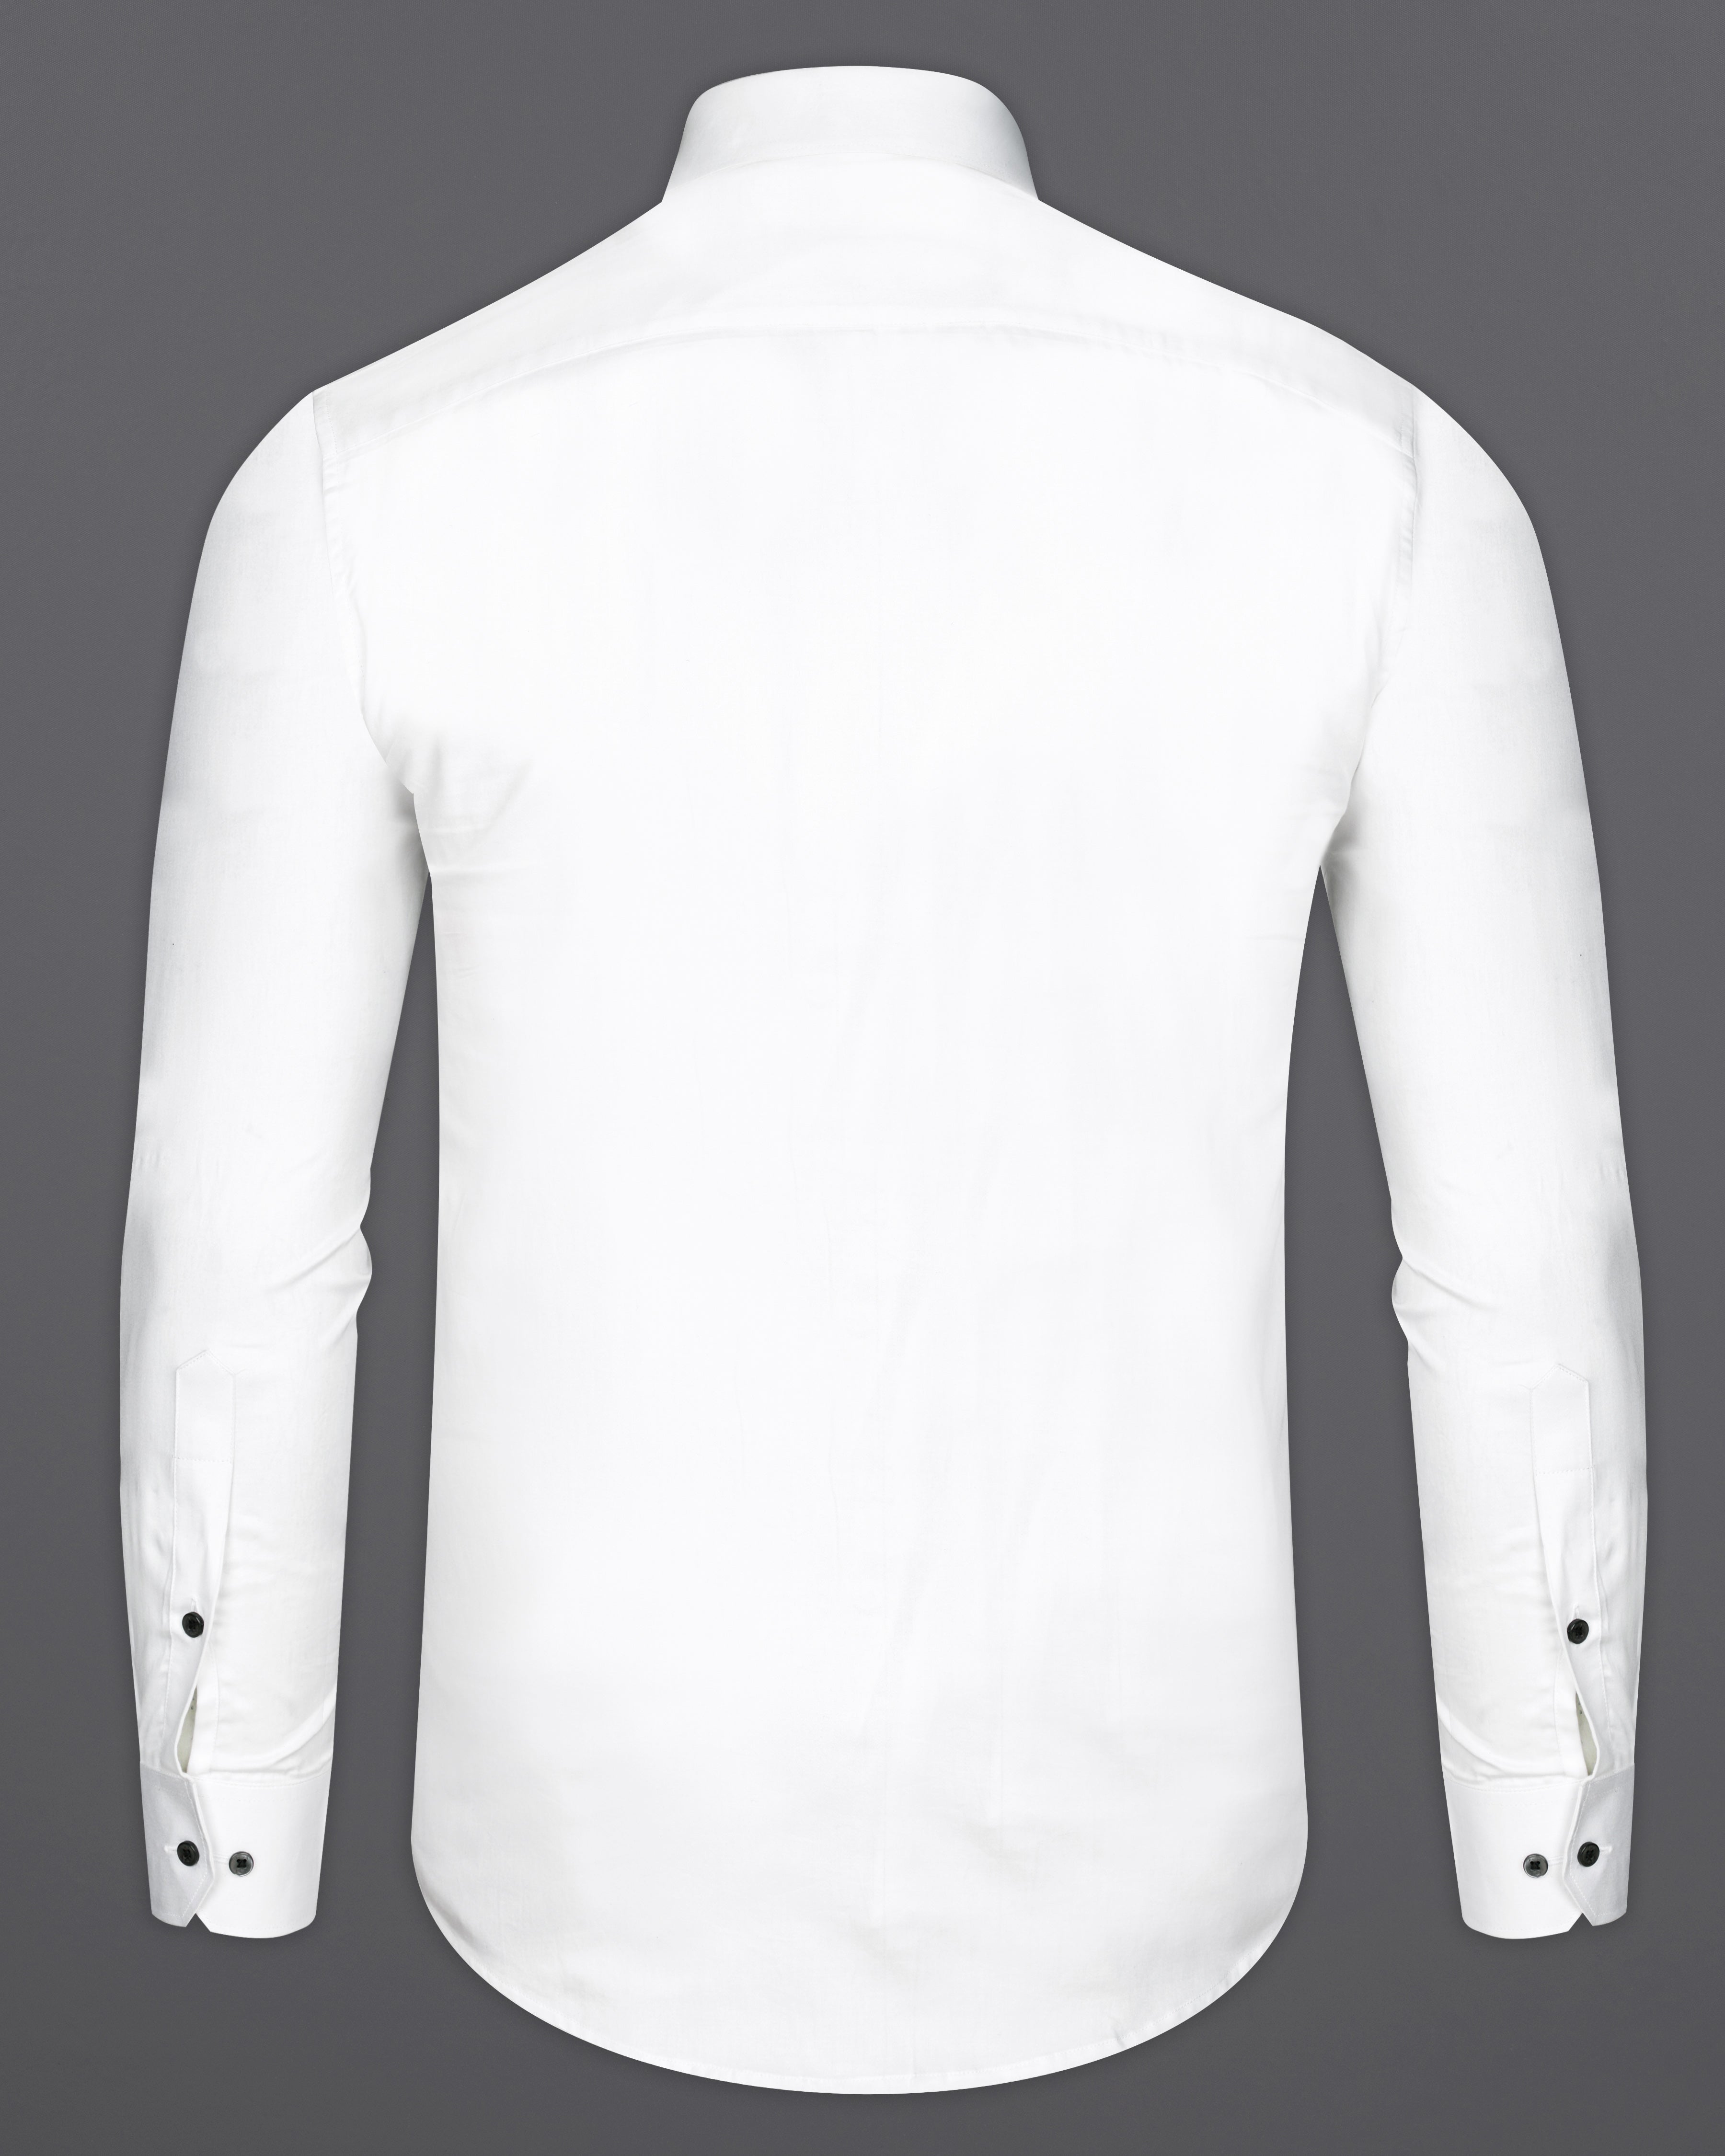 Bright White Subtle Sheen Hand Embroidered Super Soft Premium Cotton Designer Shirt 1062-BLK-E054-38,1062-BLK-E054-H-38,1062-BLK-E054-39,1062-BLK-E054-H-39,1062-BLK-E054-40,1062-BLK-E054-H-40,1062-BLK-E054-42,1062-BLK-E054-H-42,1062-BLK-E054-44,1062-BLK-E054-H-44,1062-BLK-E054-46,1062-BLK-E054-H-46,1062-BLK-E054-48,1062-BLK-E054-H-48,1062-BLK-E054-50,1062-BLK-E054-H-50,1062-BLK-E054-52,1062-BLK-E054-H-52